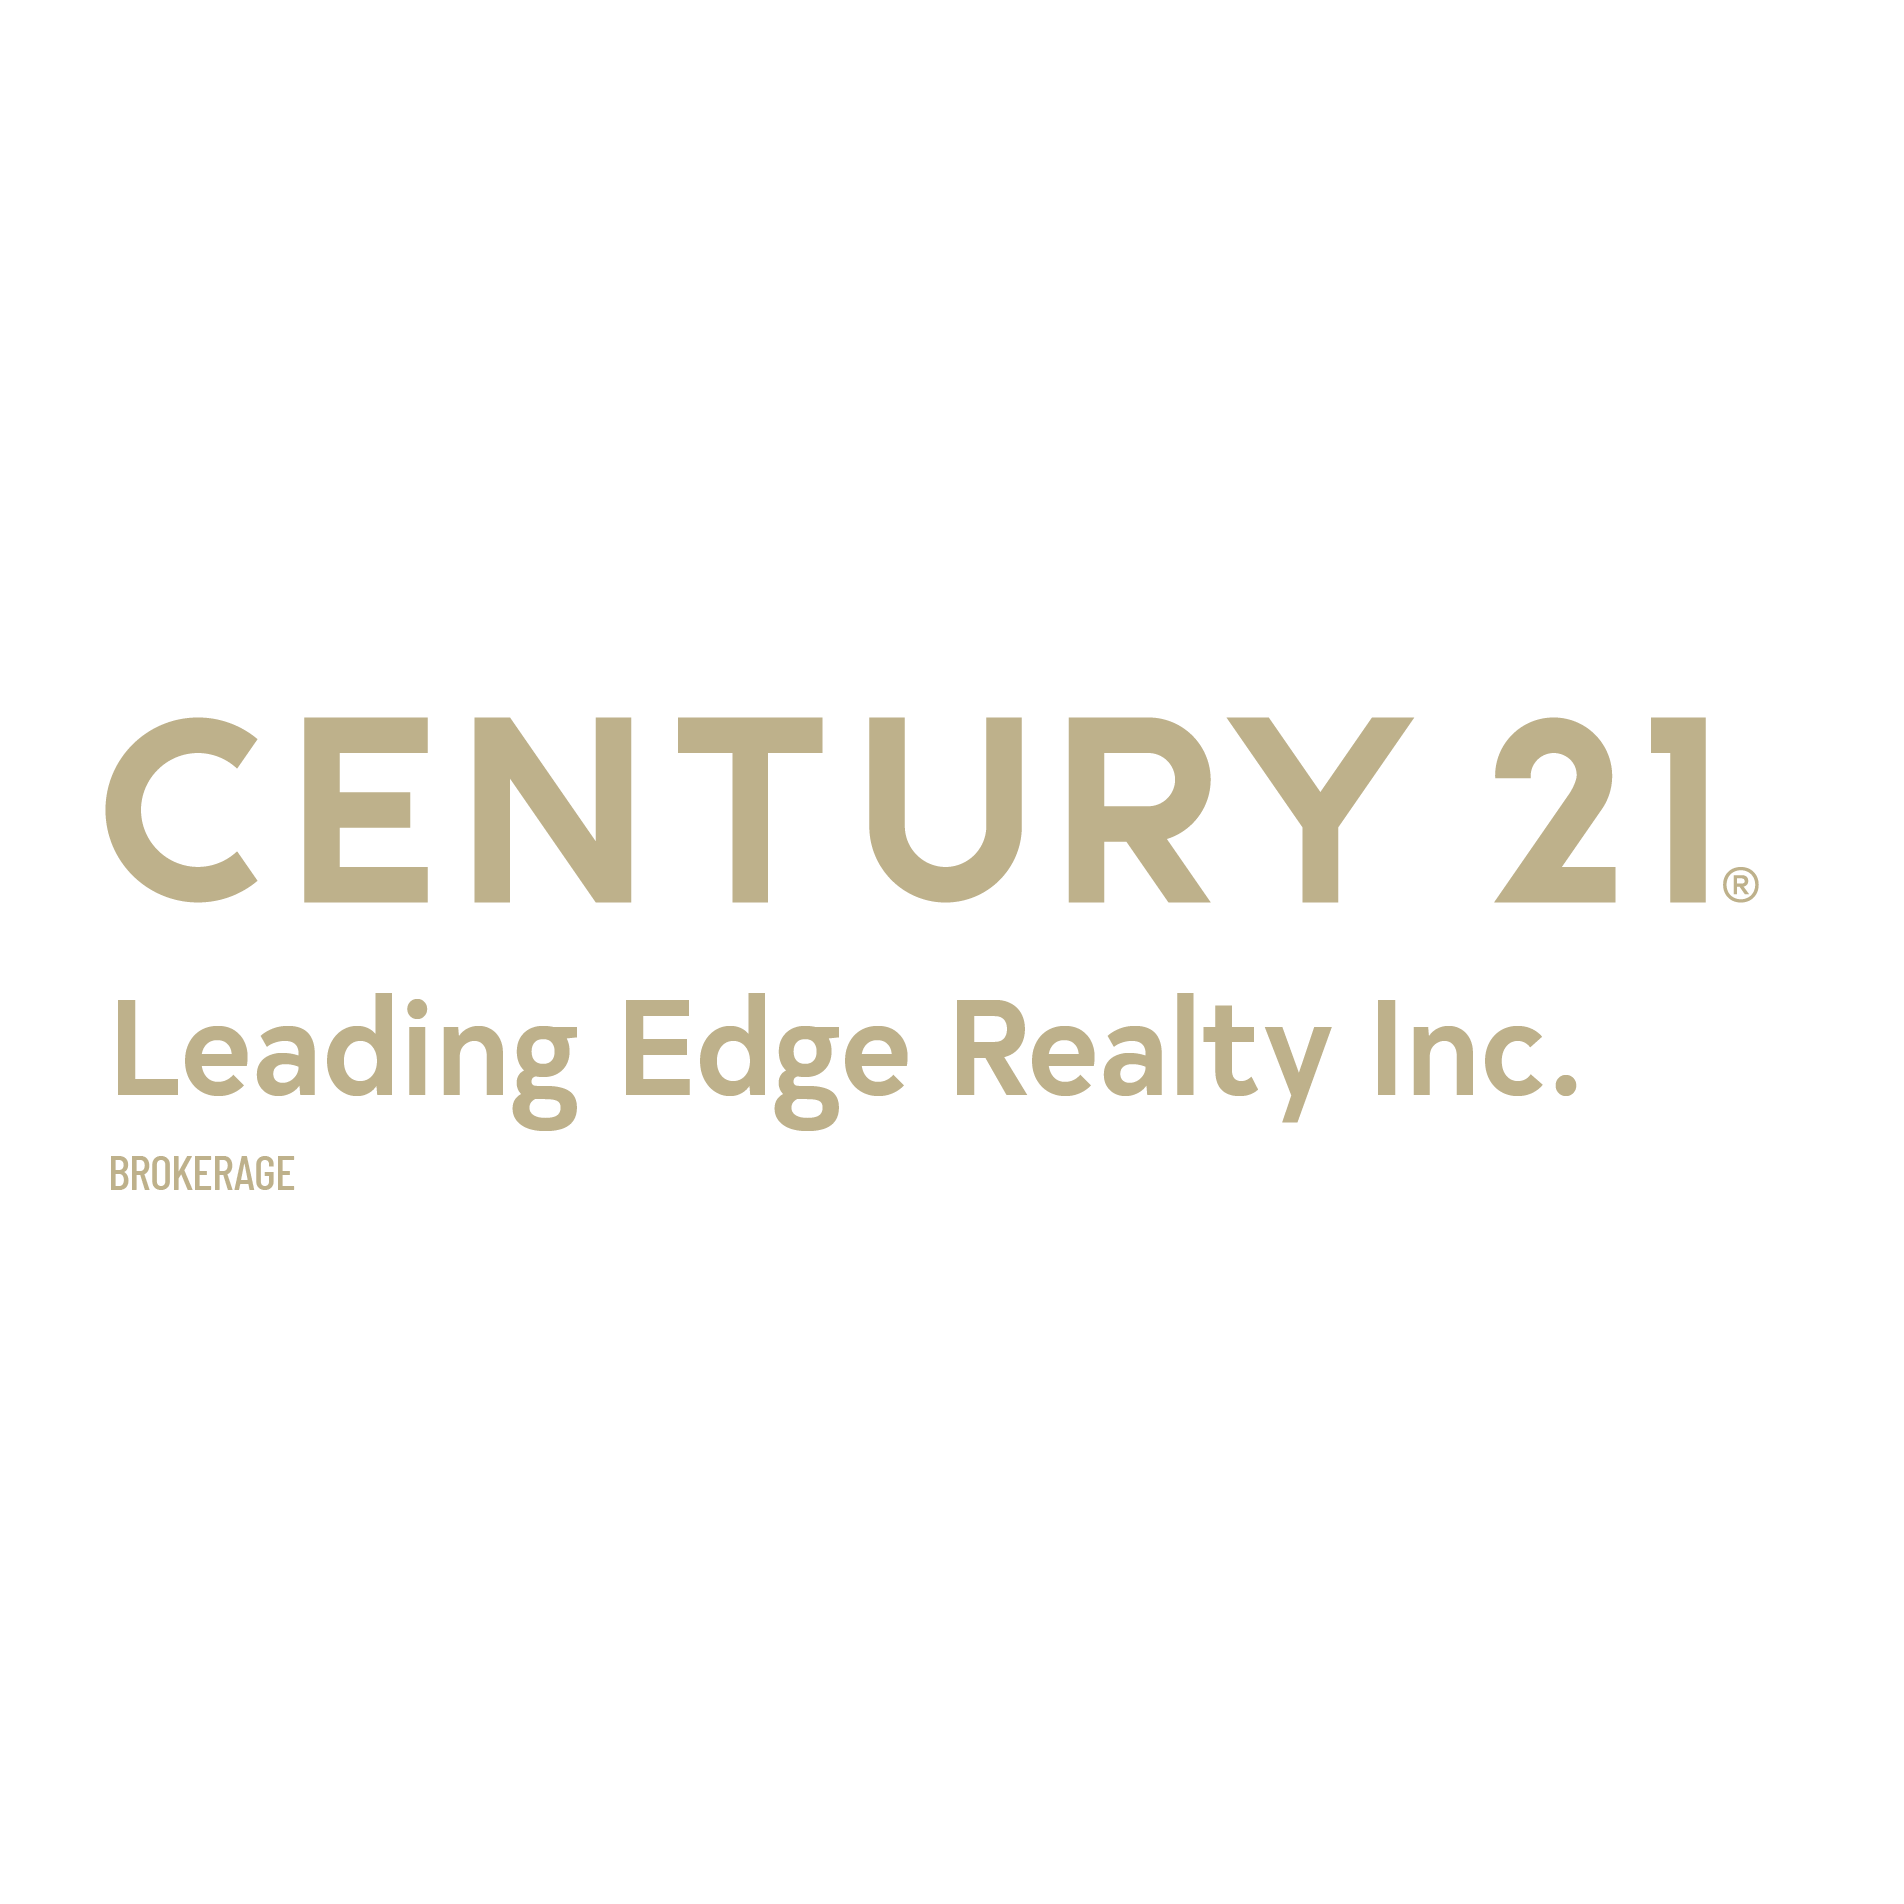 CENTURY 21 Leading Edge Realty